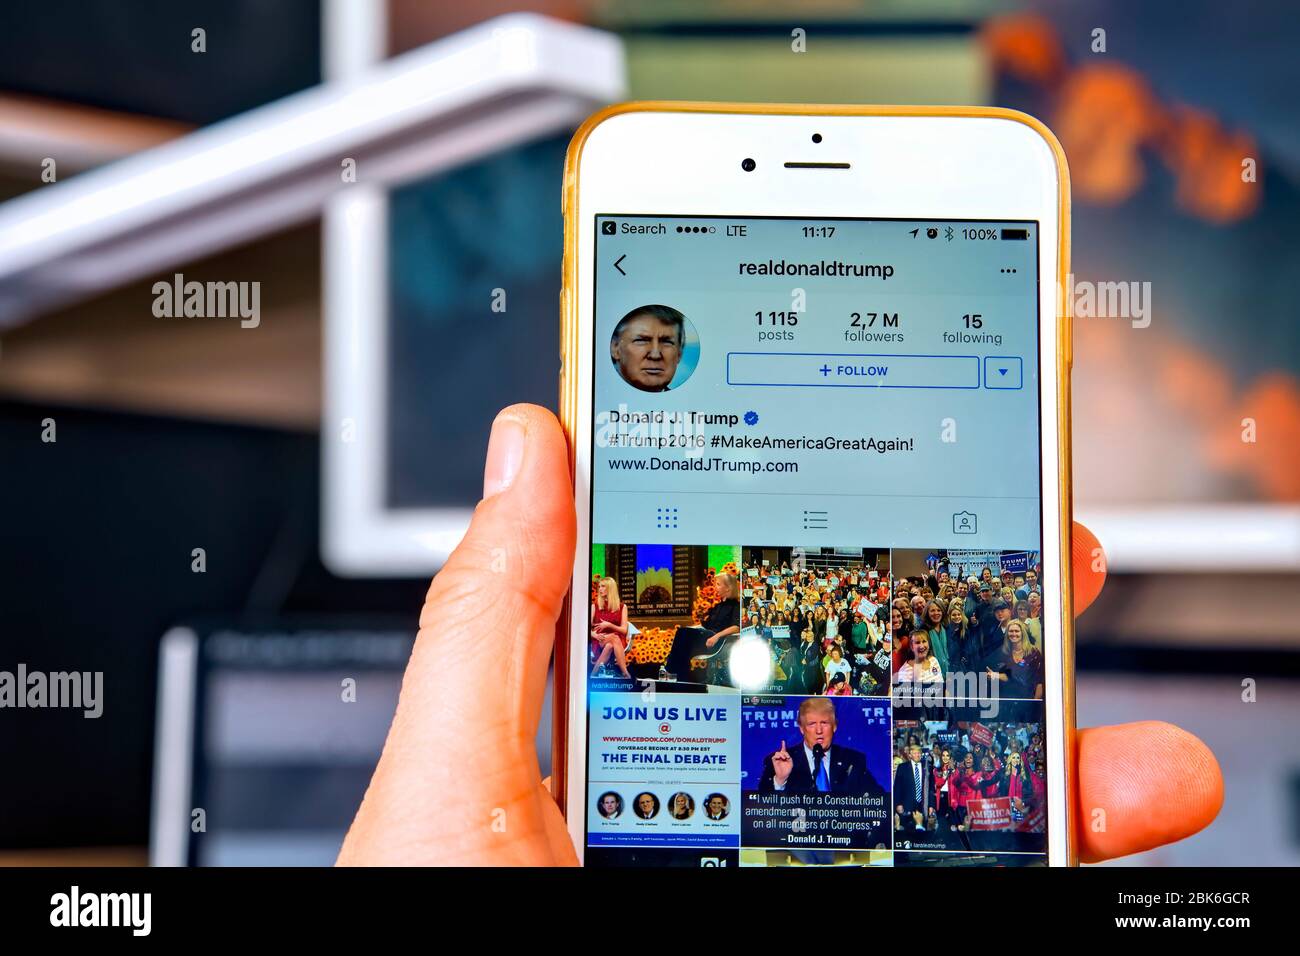 WROCLAW. POLONIA- 20 ottobre 2016: Account Instagram di Donald Trump mostrato su iPhone 6 Plus, Foto Stock